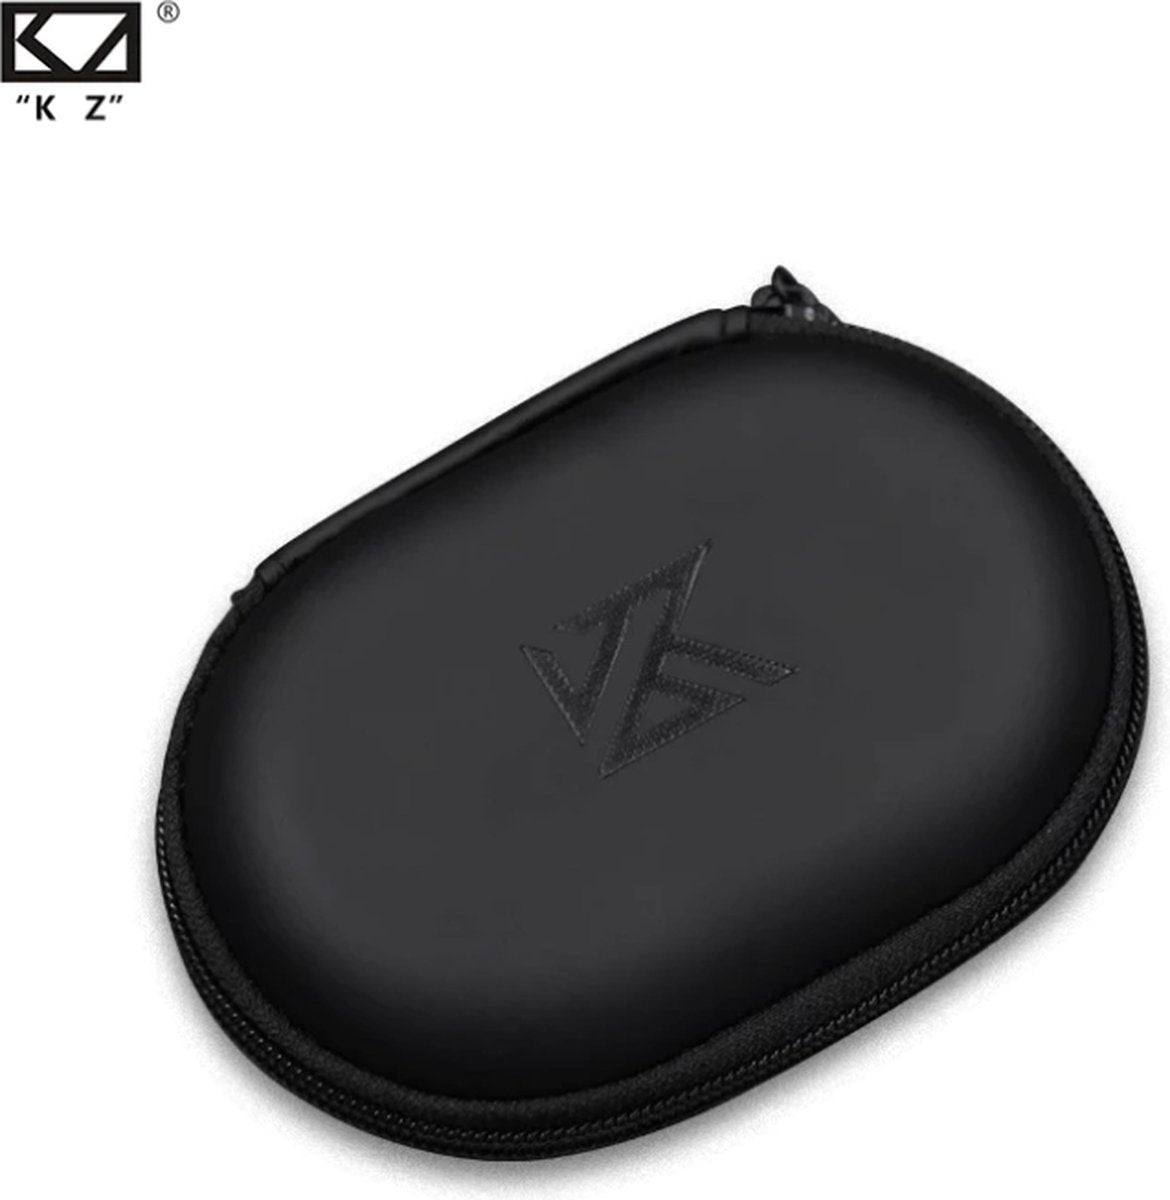 KZ - Estuche de almacenamiento / Funda para auriculares internos - Negro